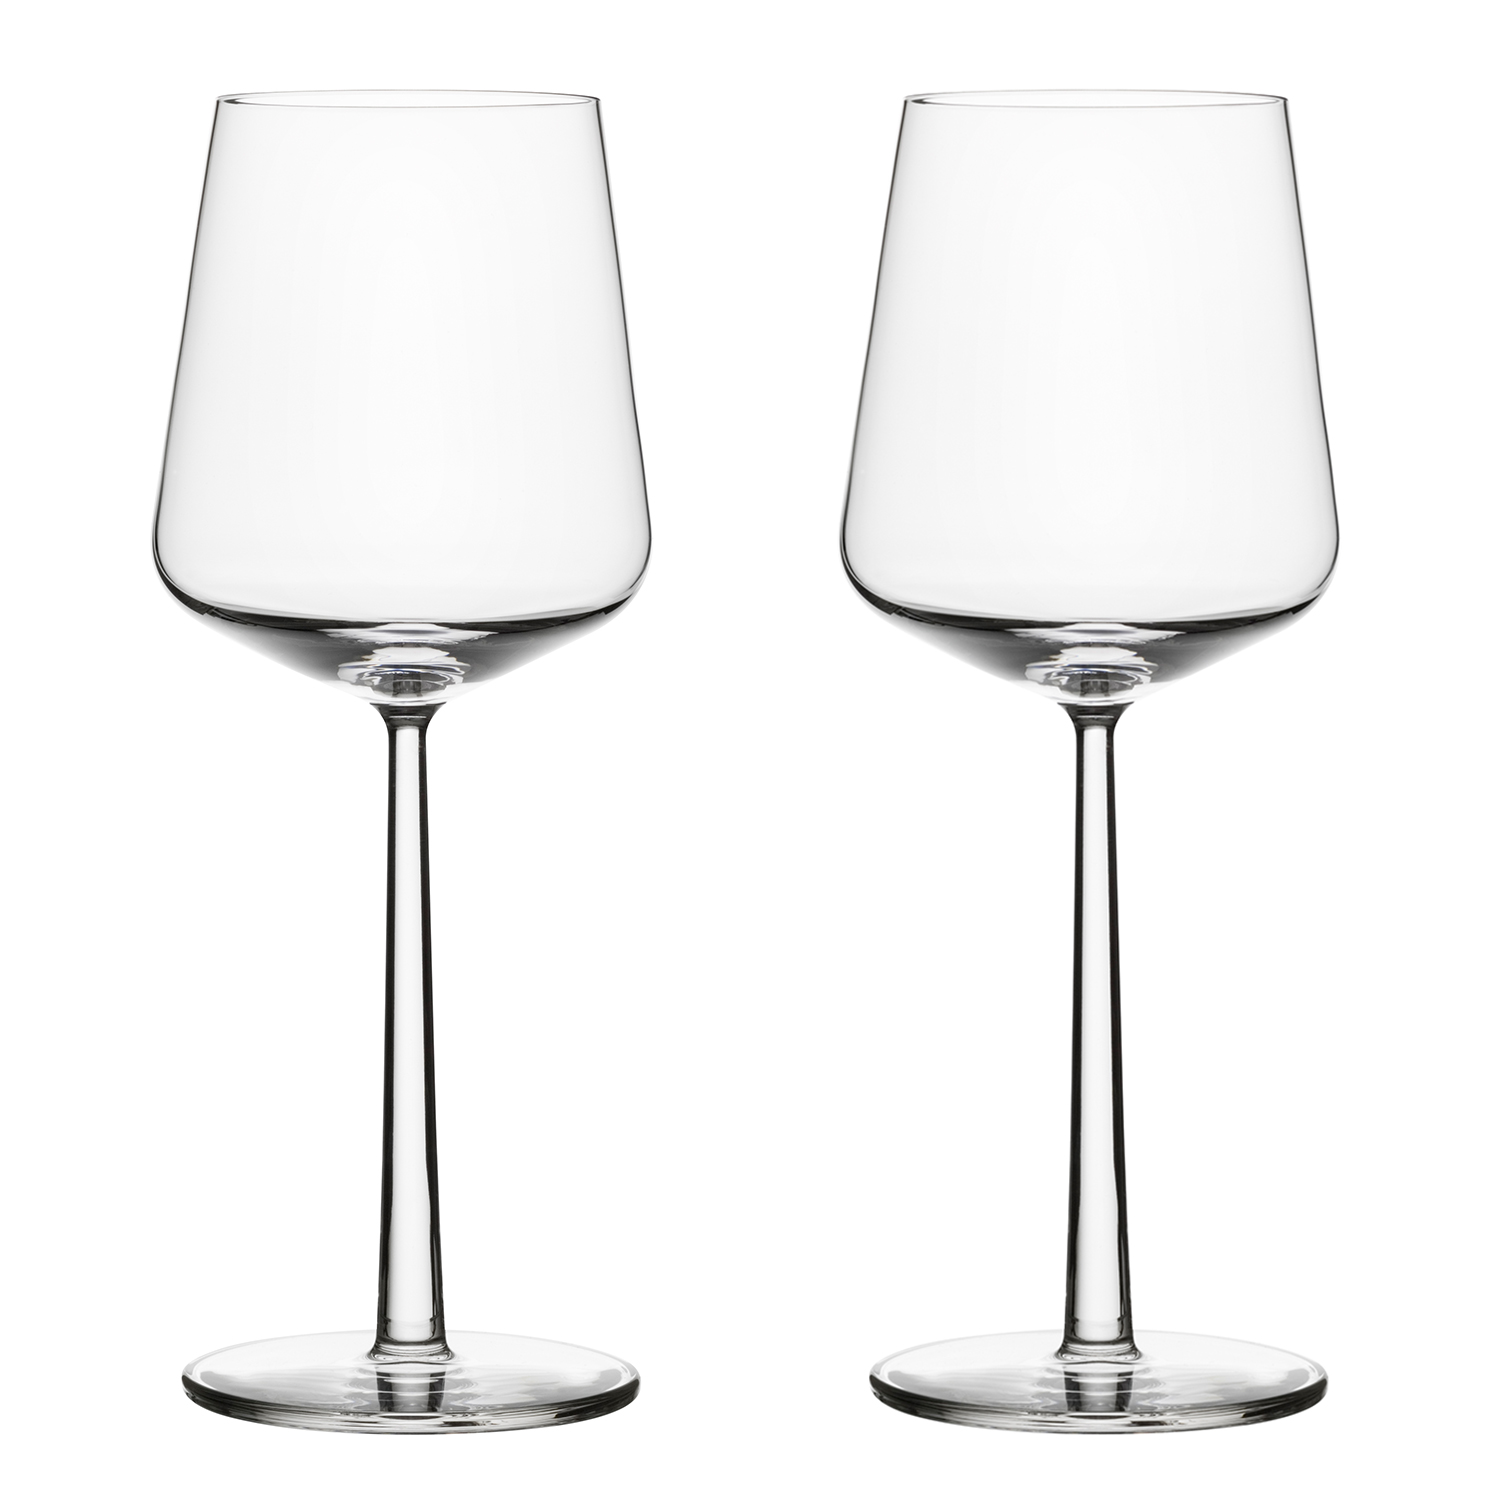 Tilbageholde Tilskud naturlig Essence Red Wine Glass 45 cl 2 pcs - Iittala @ RoyalDesign